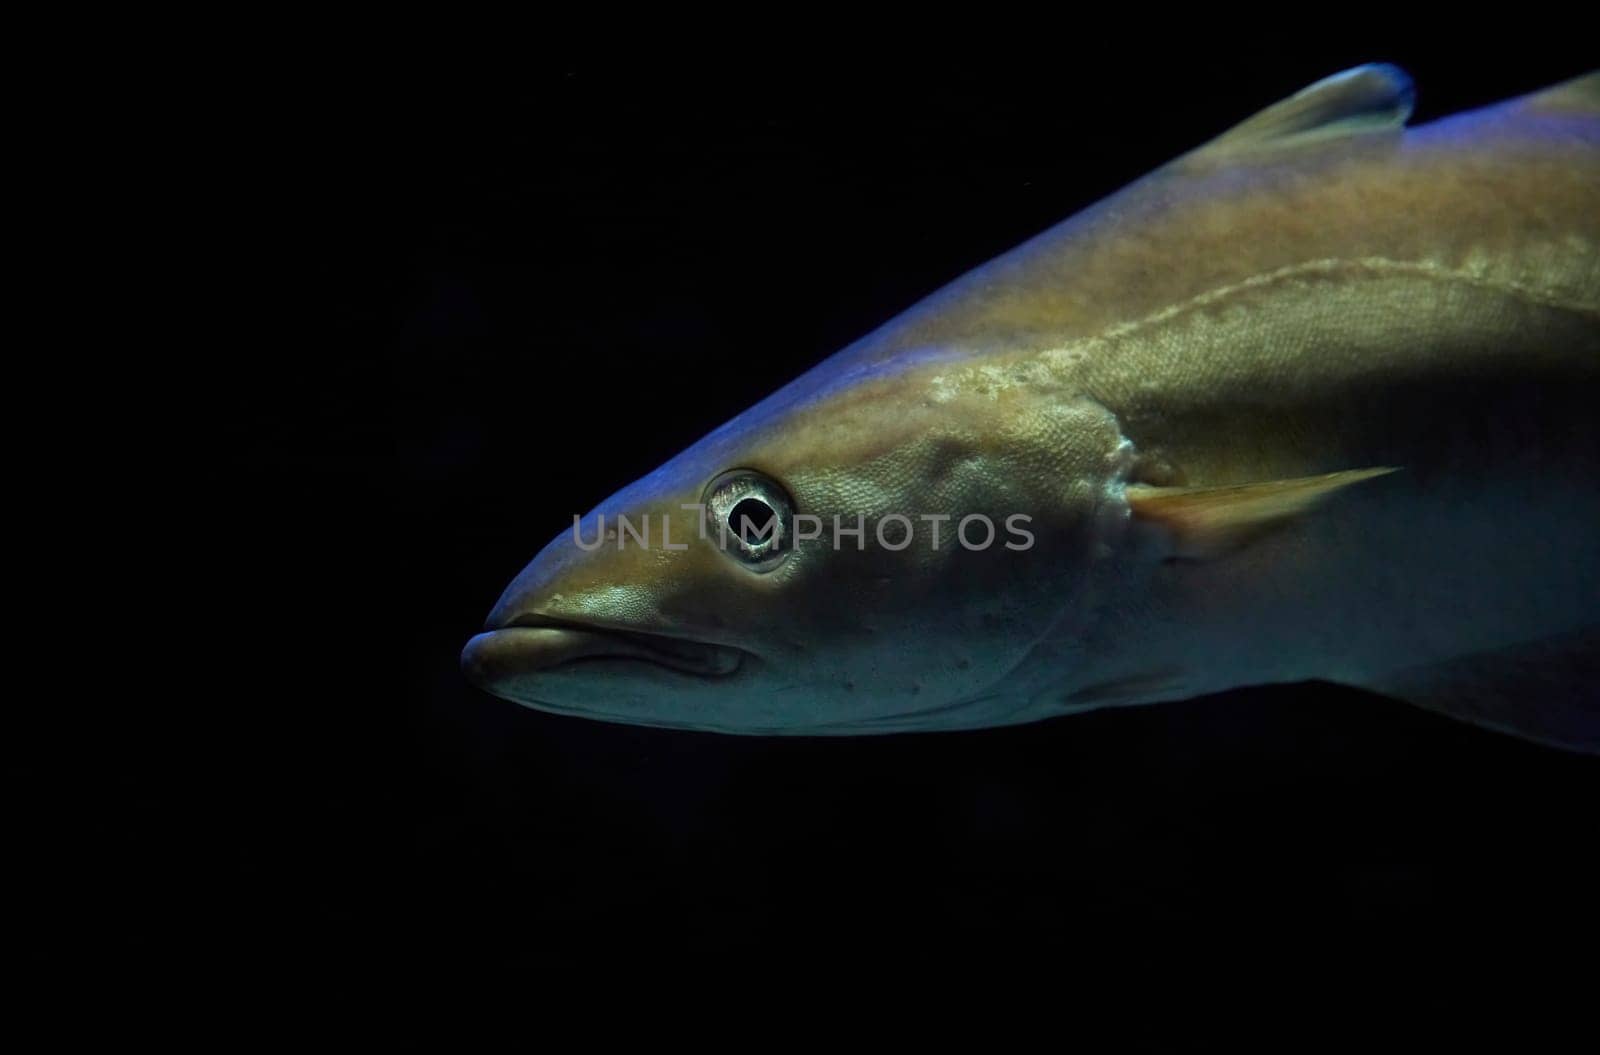 Fish close up in dark waters in Denmark. Underwater photo by Viktor_Osypenko